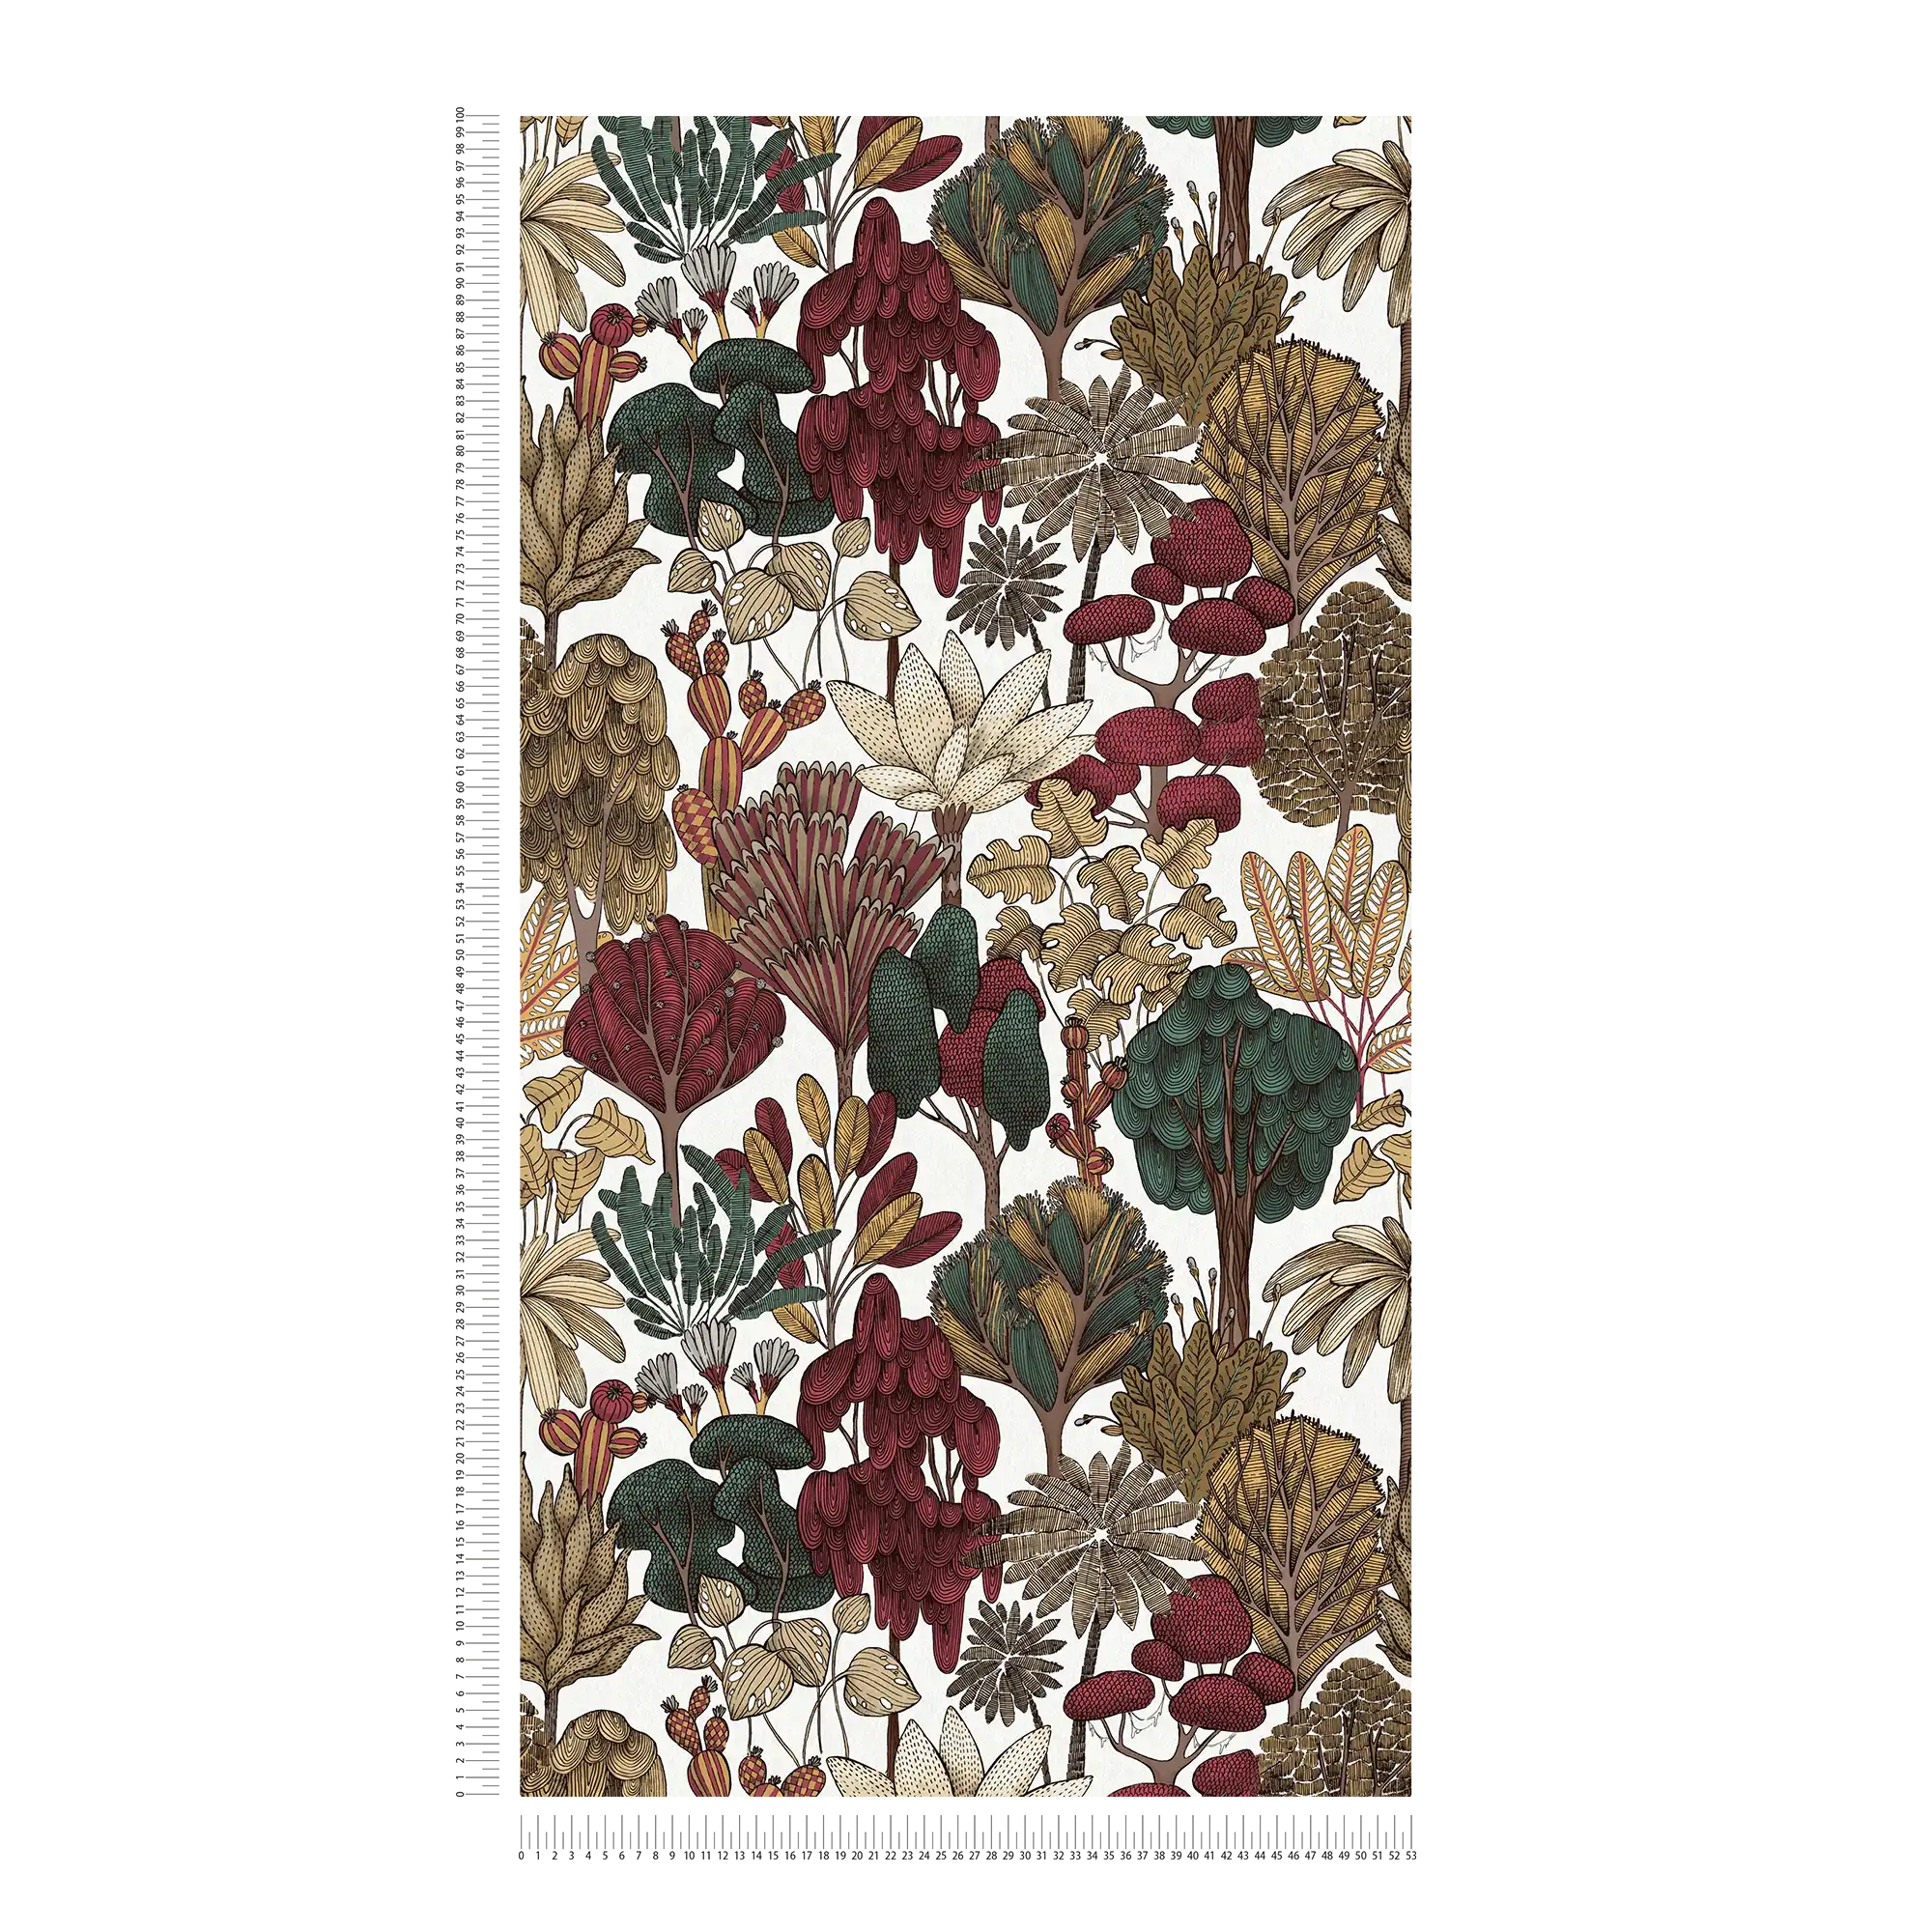             Moderne Tapete floral mit Bäumen im Zeichenstil – Rot, Beige, Braun
        